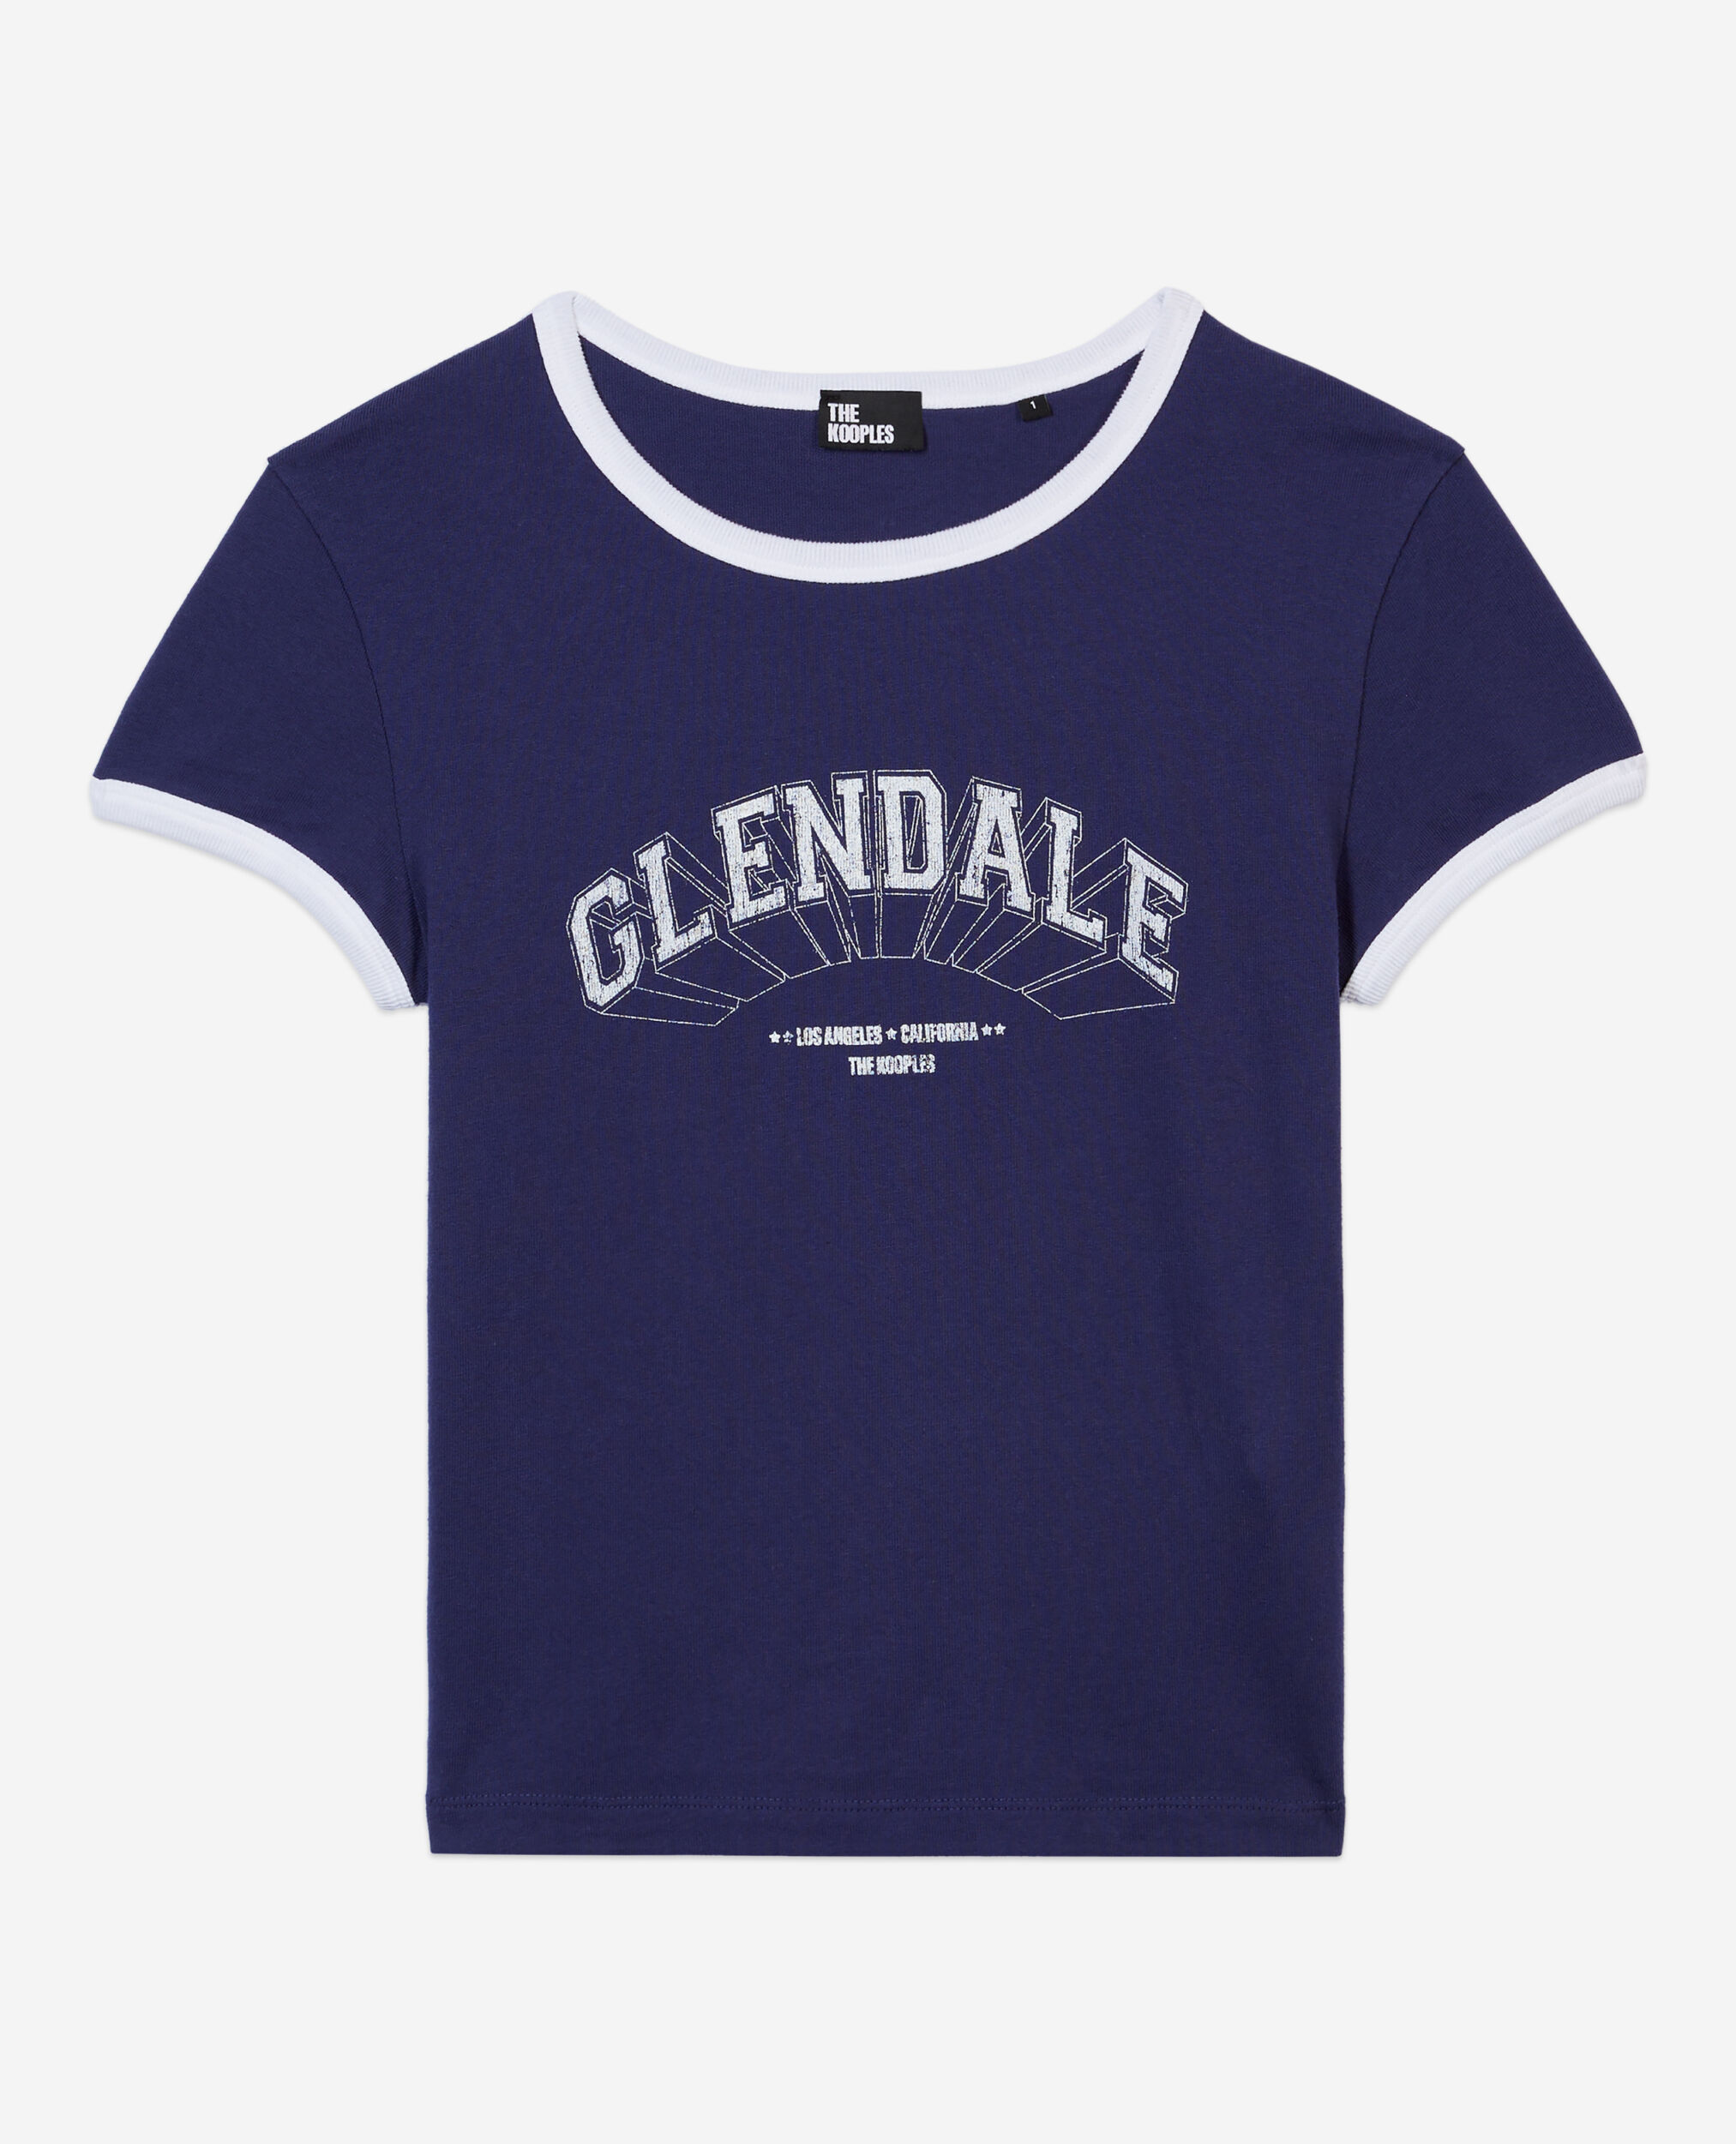 T-shirt bleu marine avec sérigraphie Glendale, WASHED NAVY, hi-res image number null